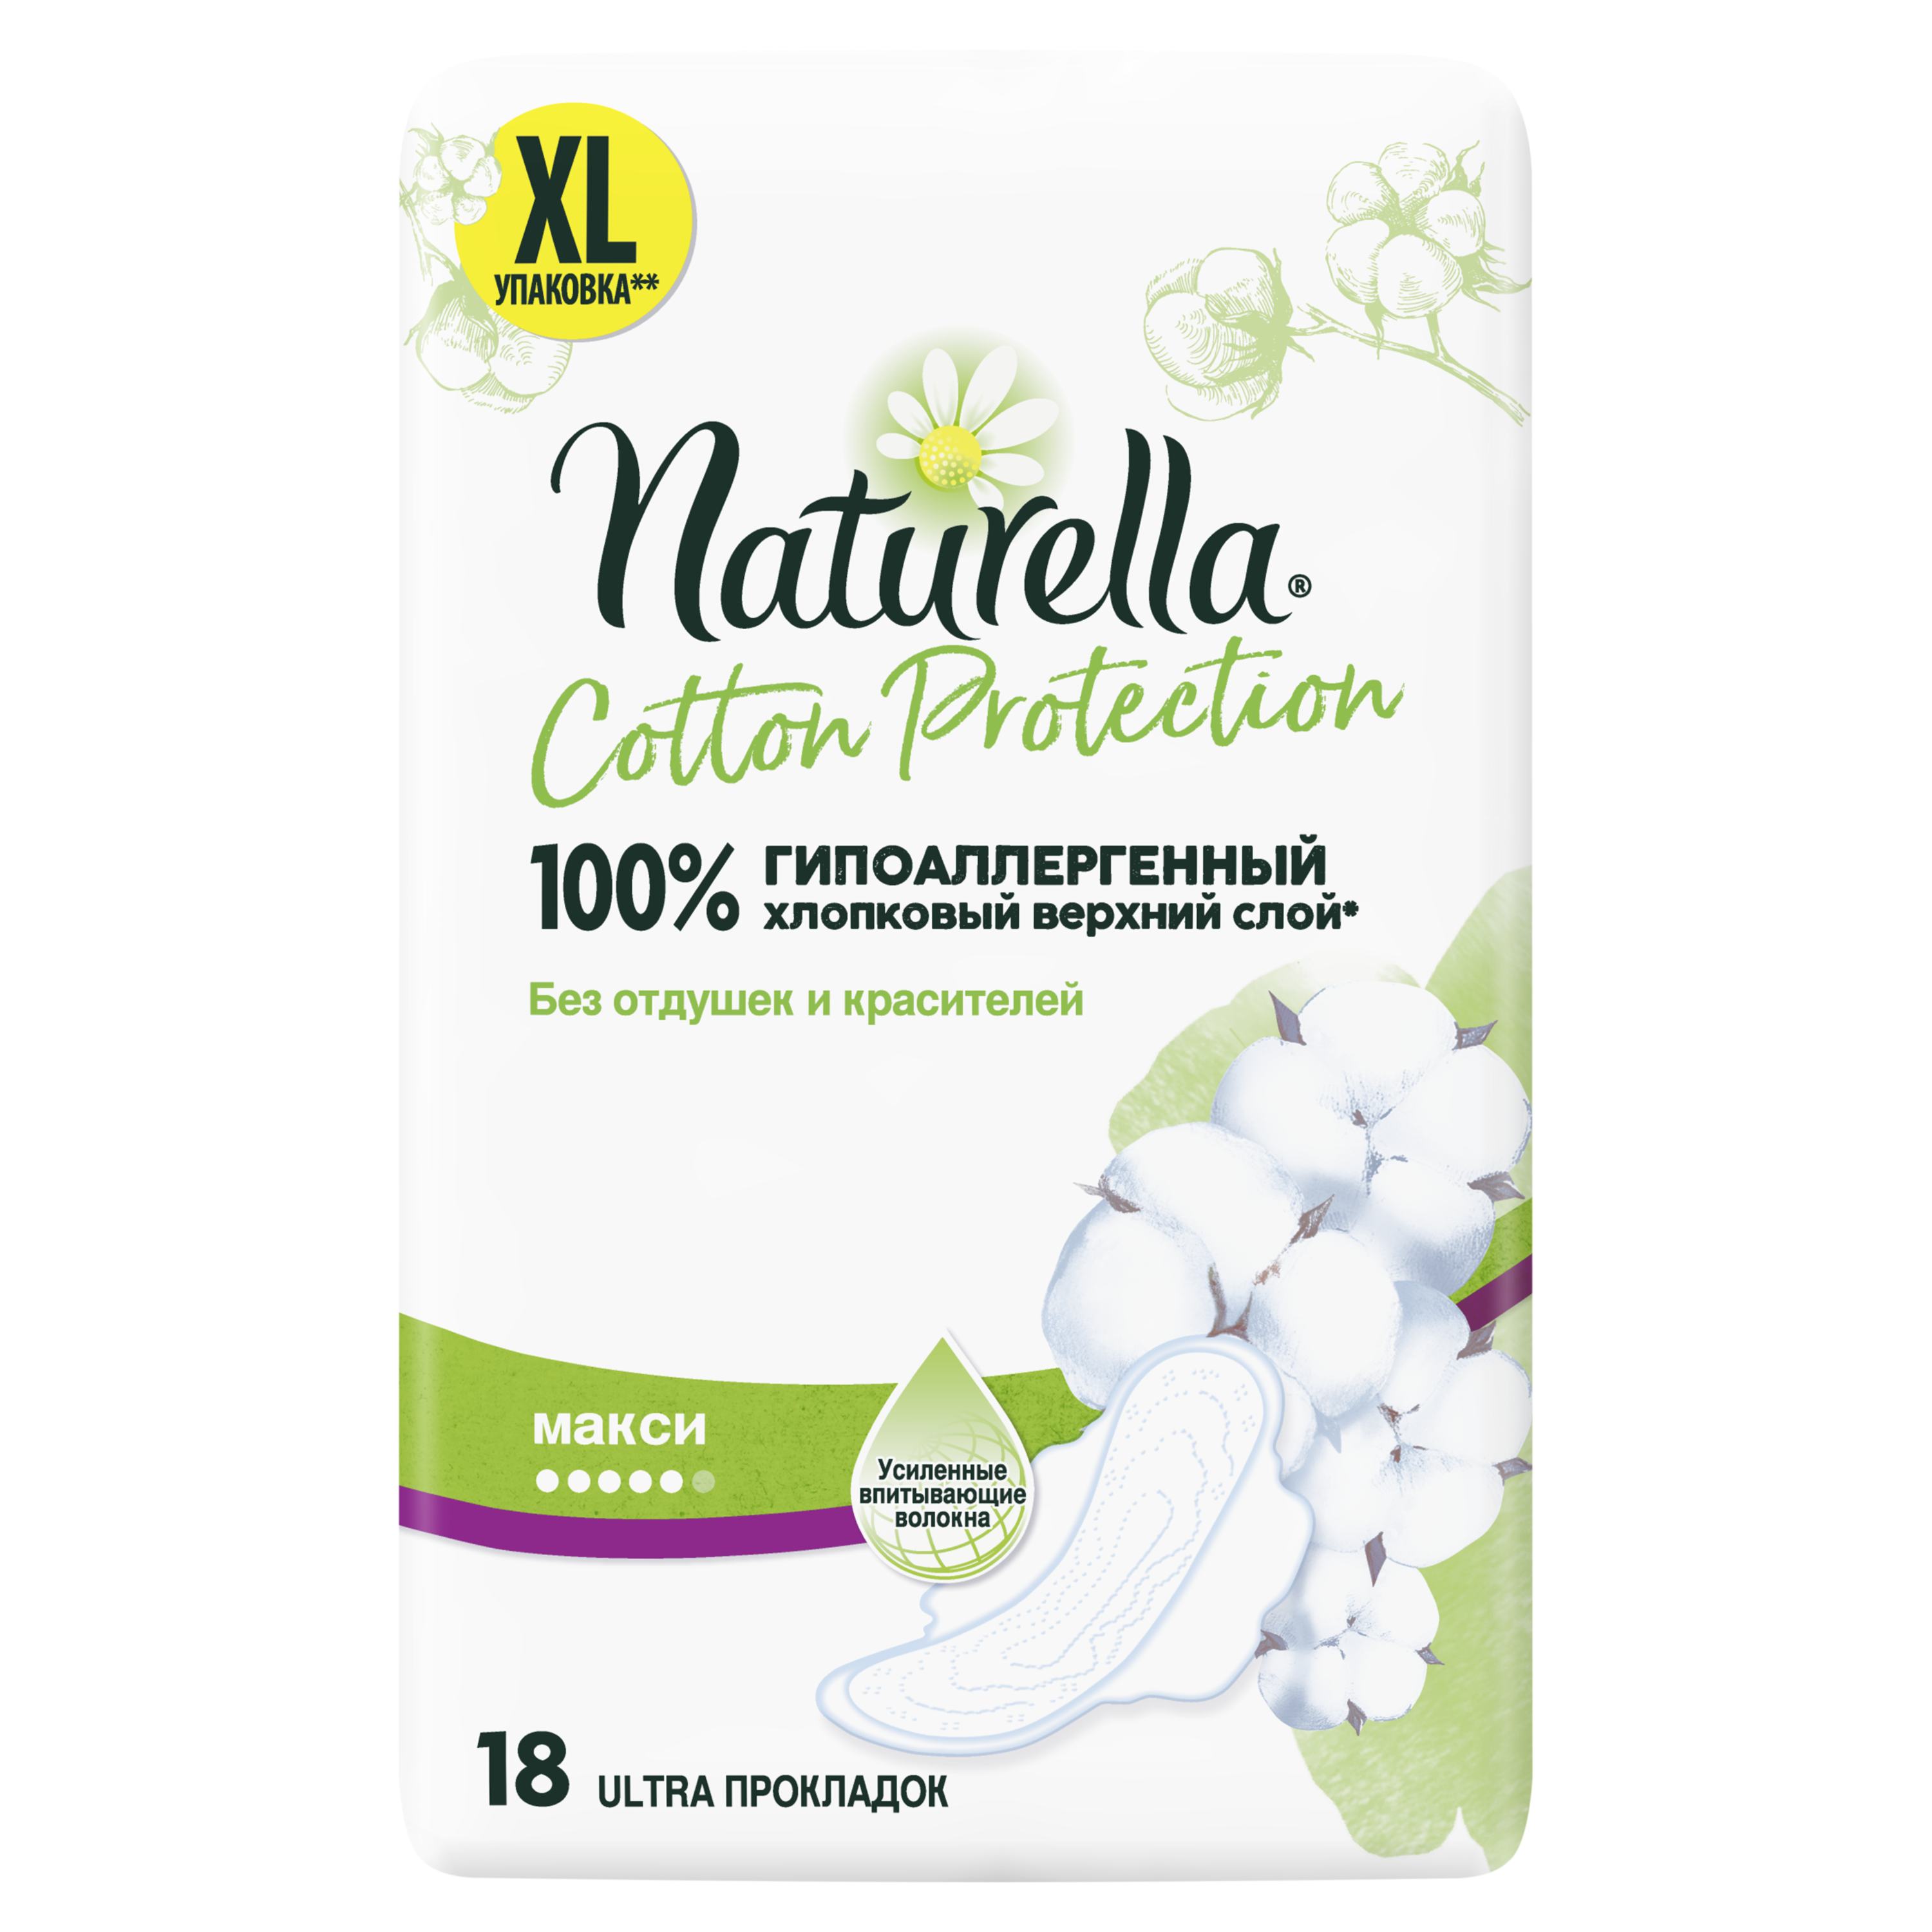 Прокладки Гигиенические Naturella Cotton Protection Maxi 18 гигиенические прокладки d recipe real cotton pads regular из натурального хлопка 12 шт